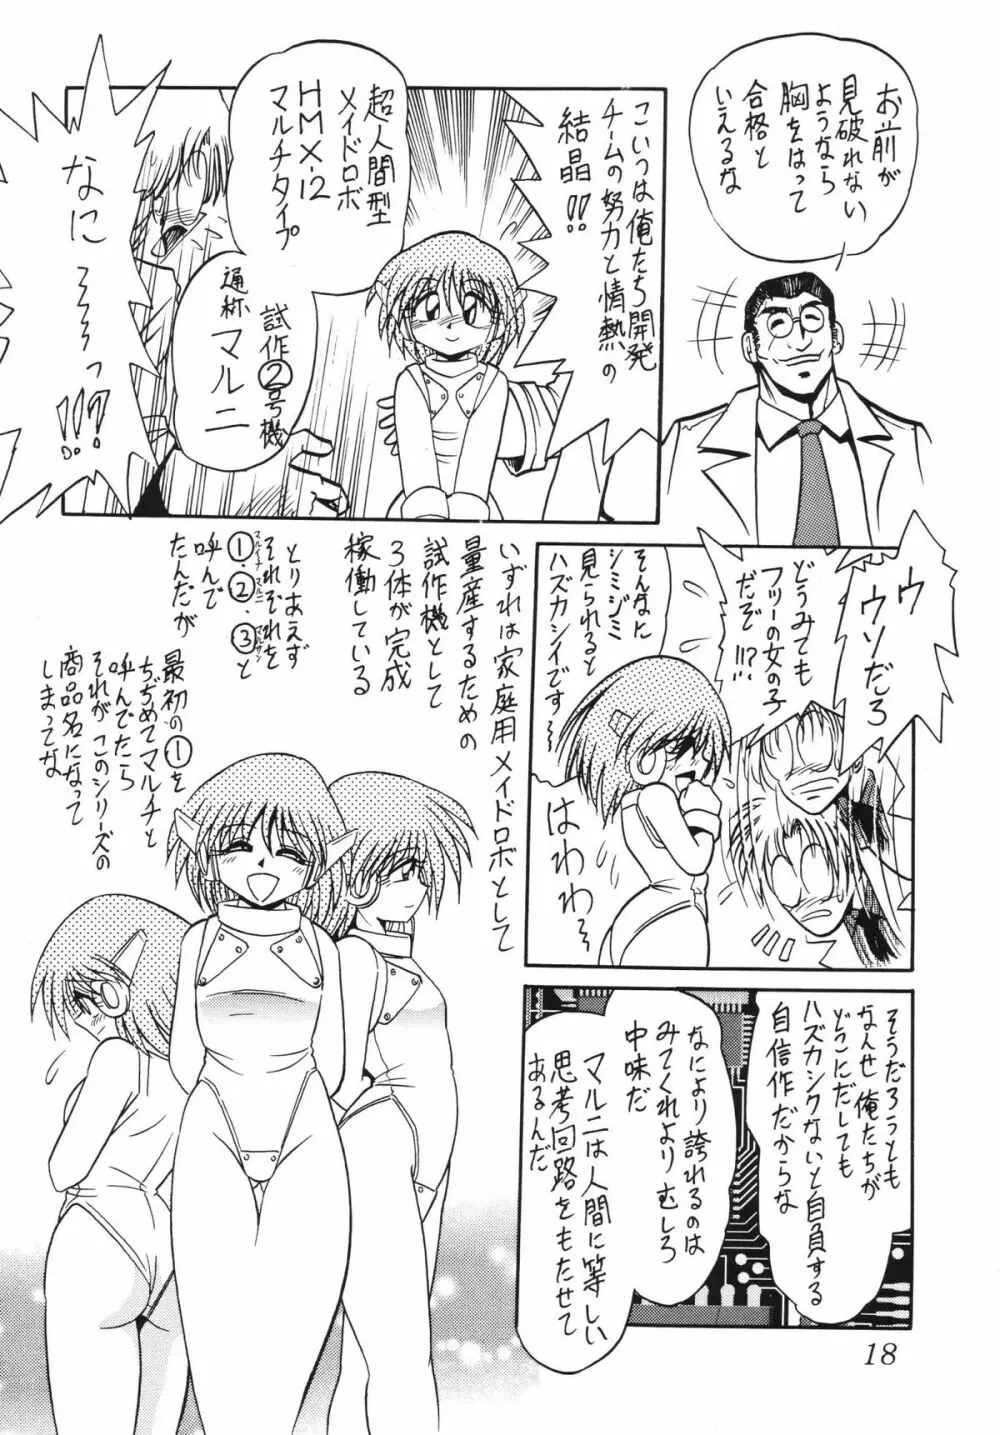 サイレント・サターン SS vol.5 - page18